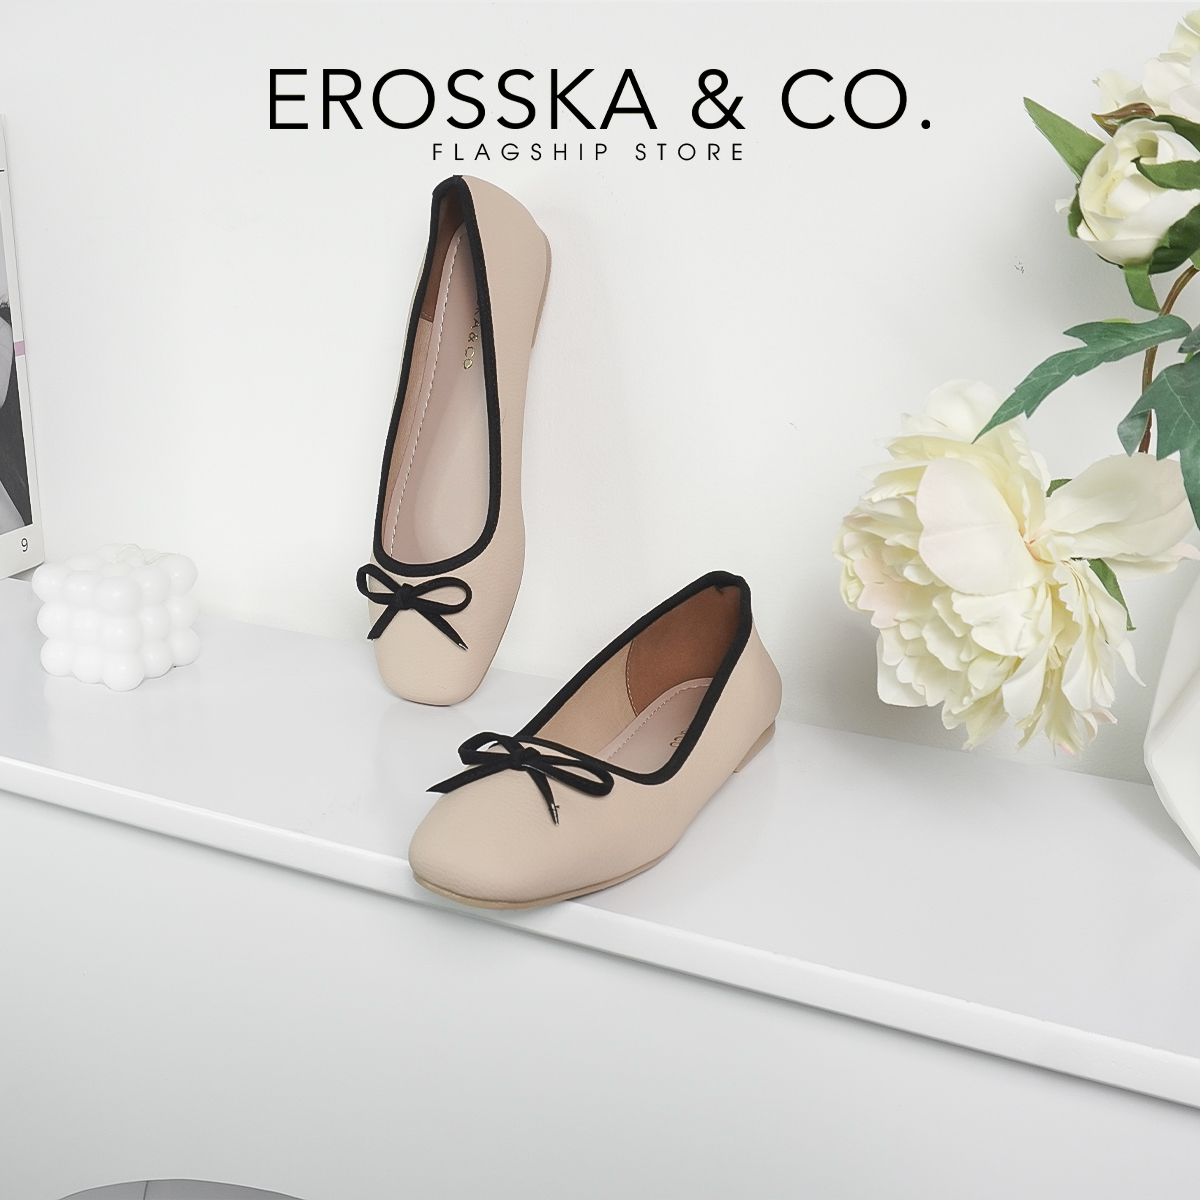 Erosska - Giày búp bê nữ đế bệt kiểu dáng đơn giản gắn nơ - EF017